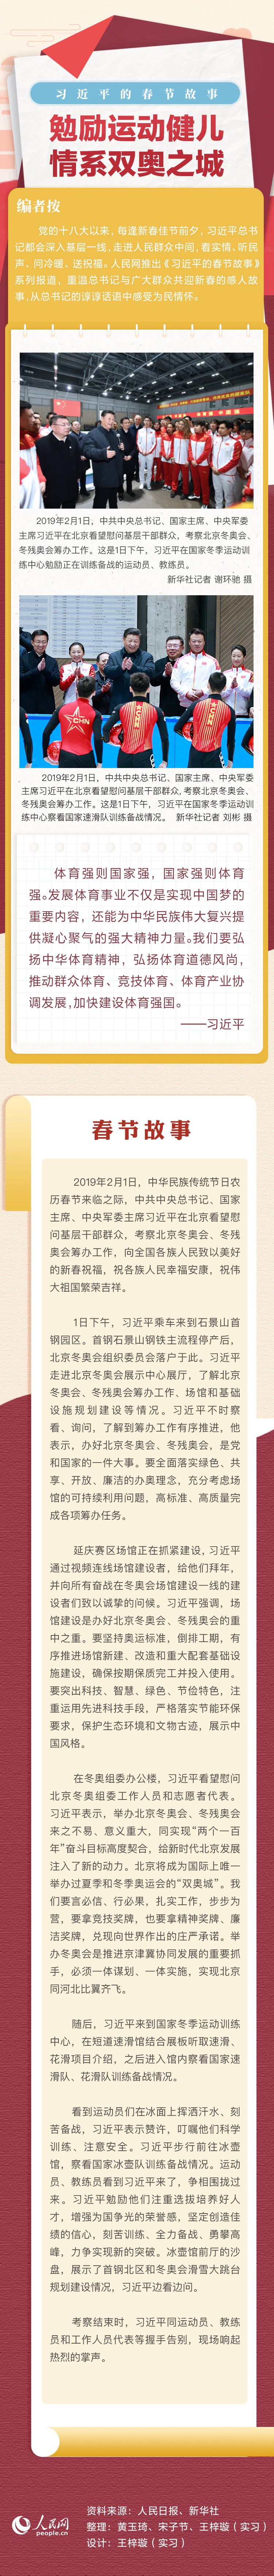 广东惠州惠东县14日24时全域解除封控管控600696多伦股份